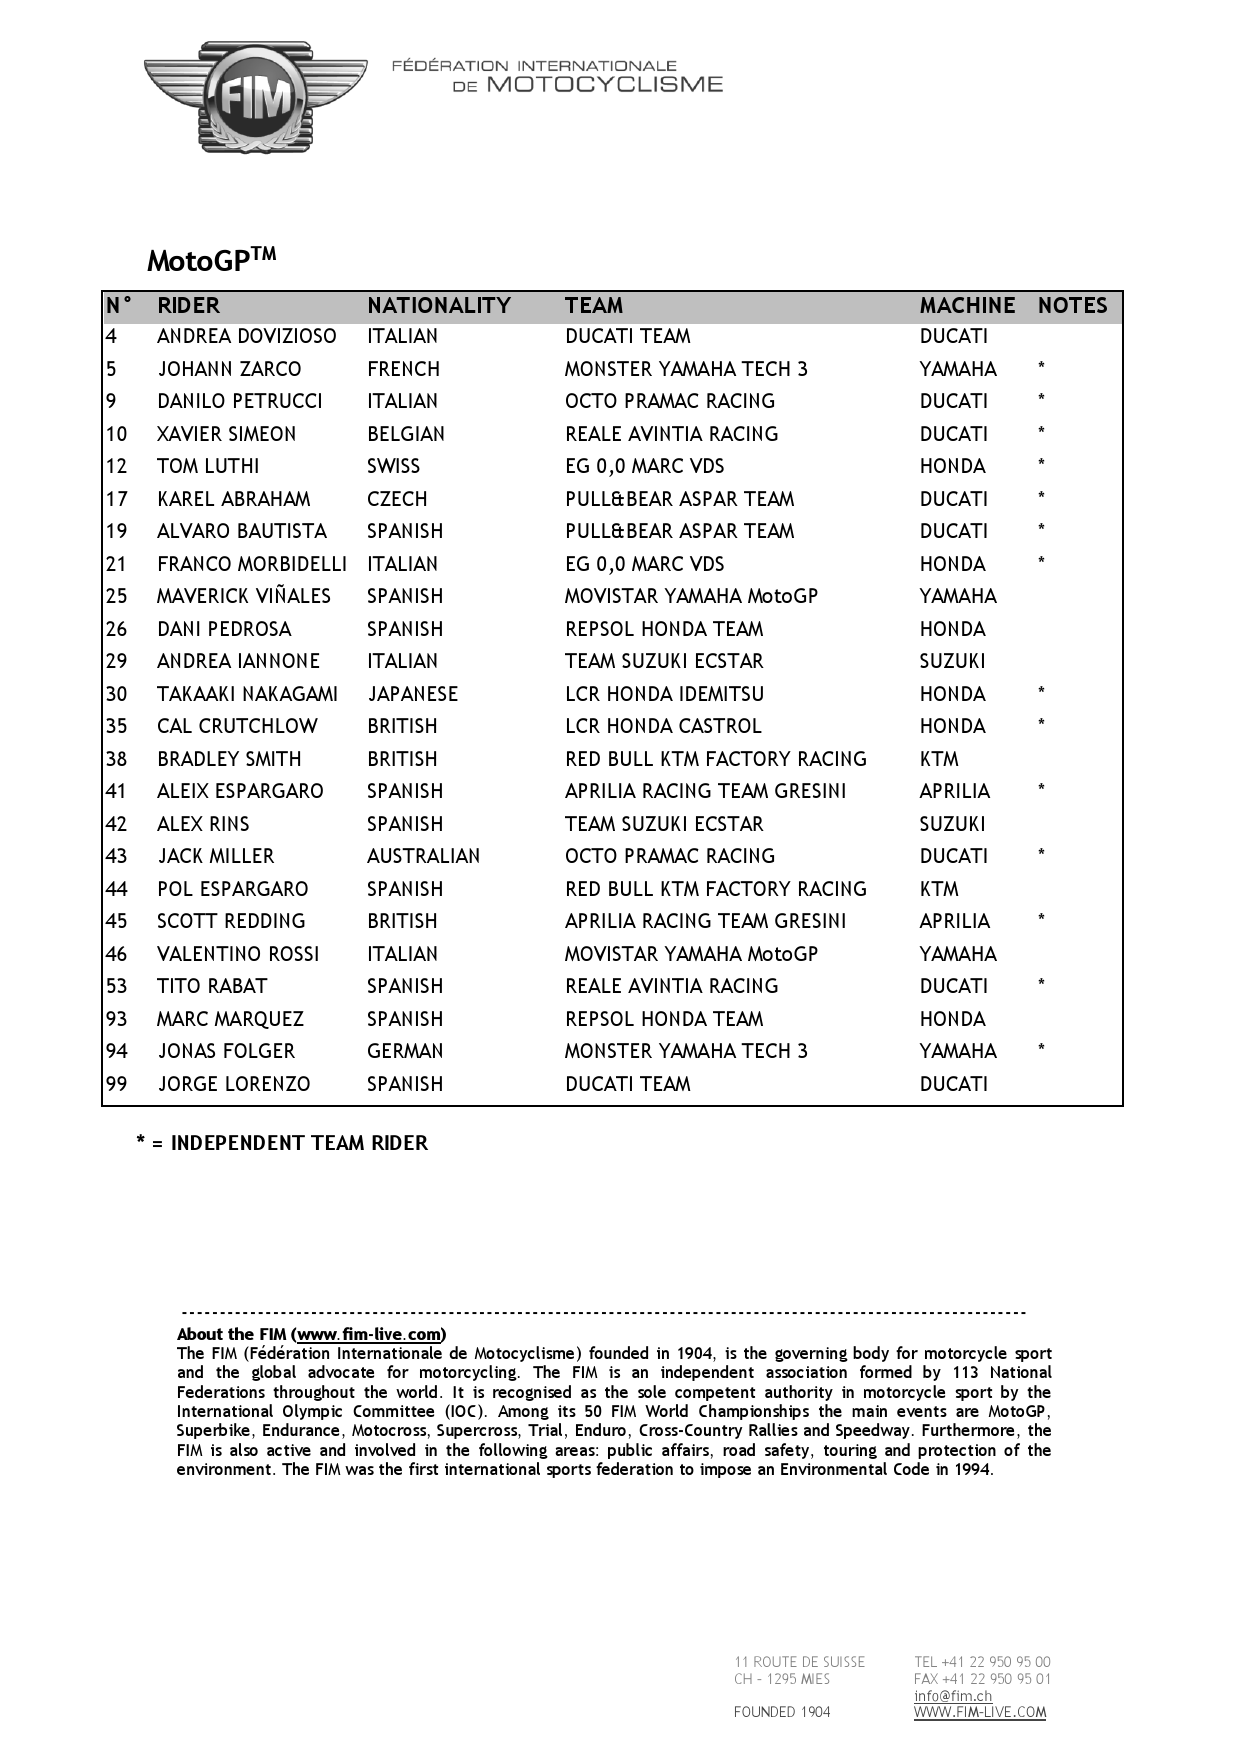 Список пилотов и стартовые номера в чемпионате мира по MotoGP 2018 года